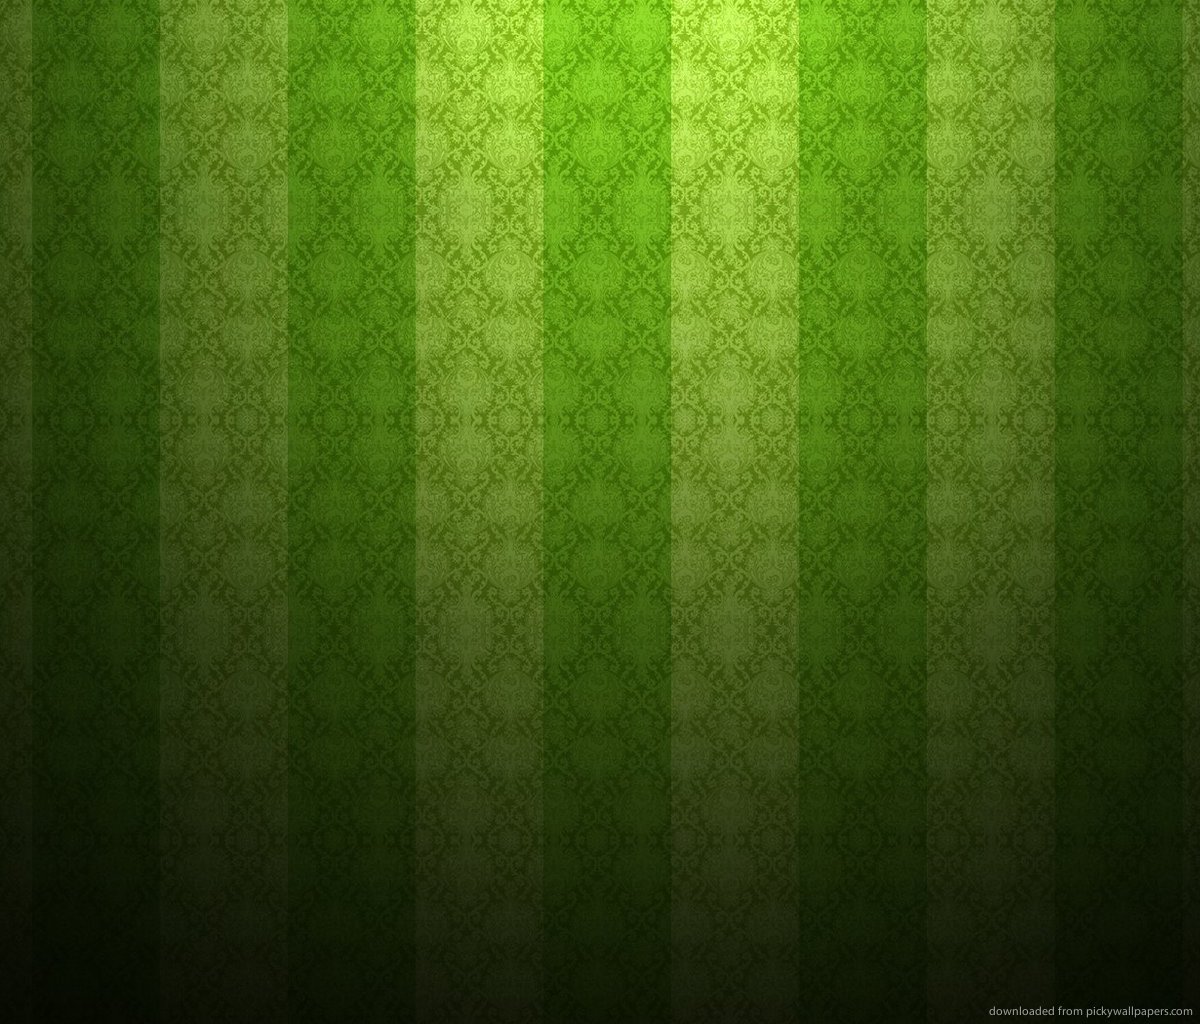 green-textured-wallpaper-with-vertical-stripes.jpg | FSSP HUNTERDON